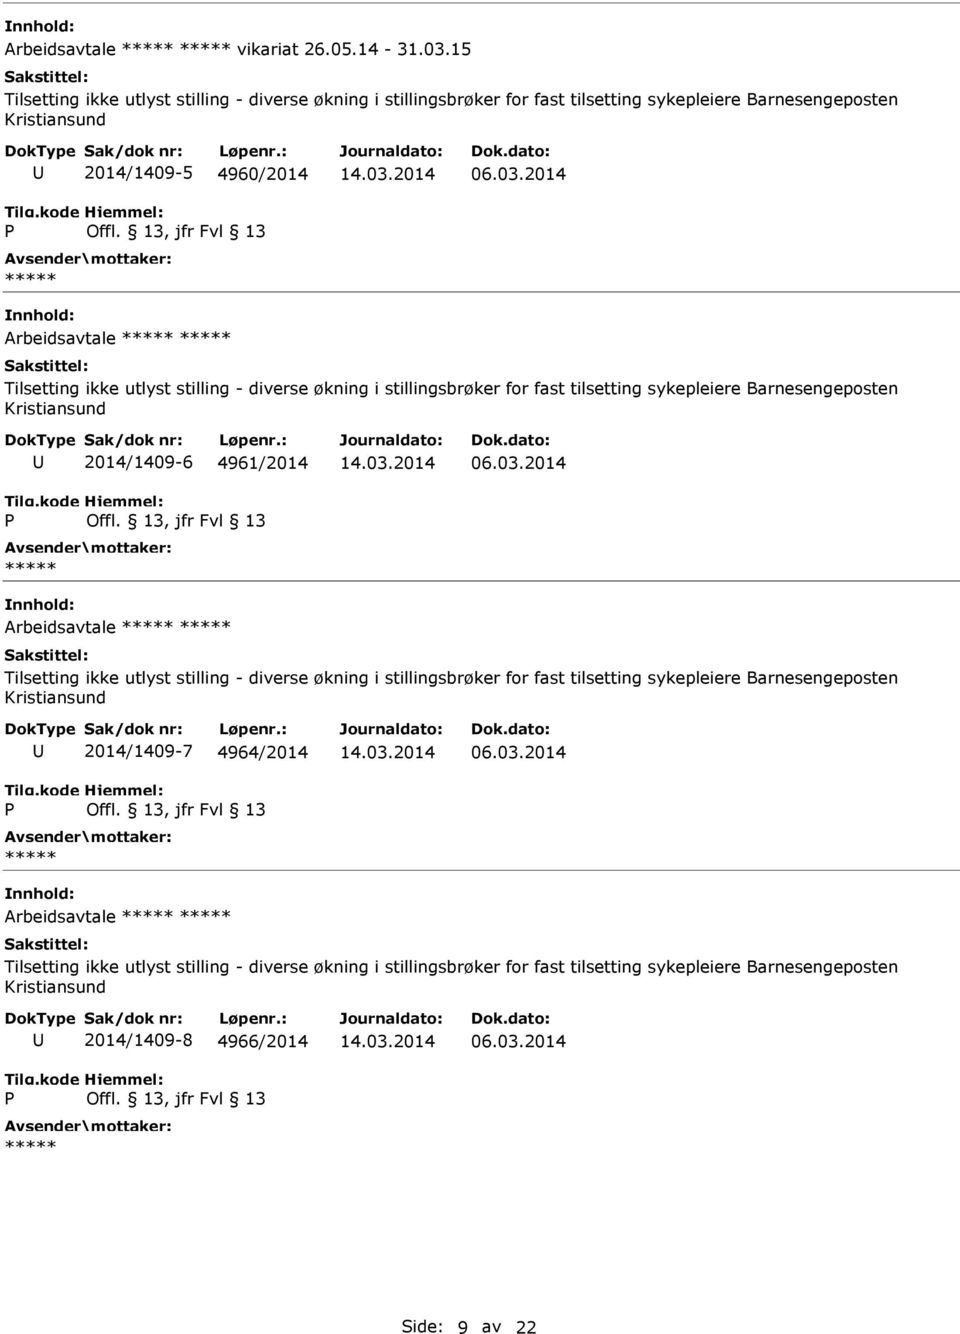 Tilsetting ikke utlyst stilling - diverse økning i stillingsbrøker for fast tilsetting sykepleiere Barnesengeposten Kristiansund 2014/1409-6 4961/2014 Arbeidsavtale